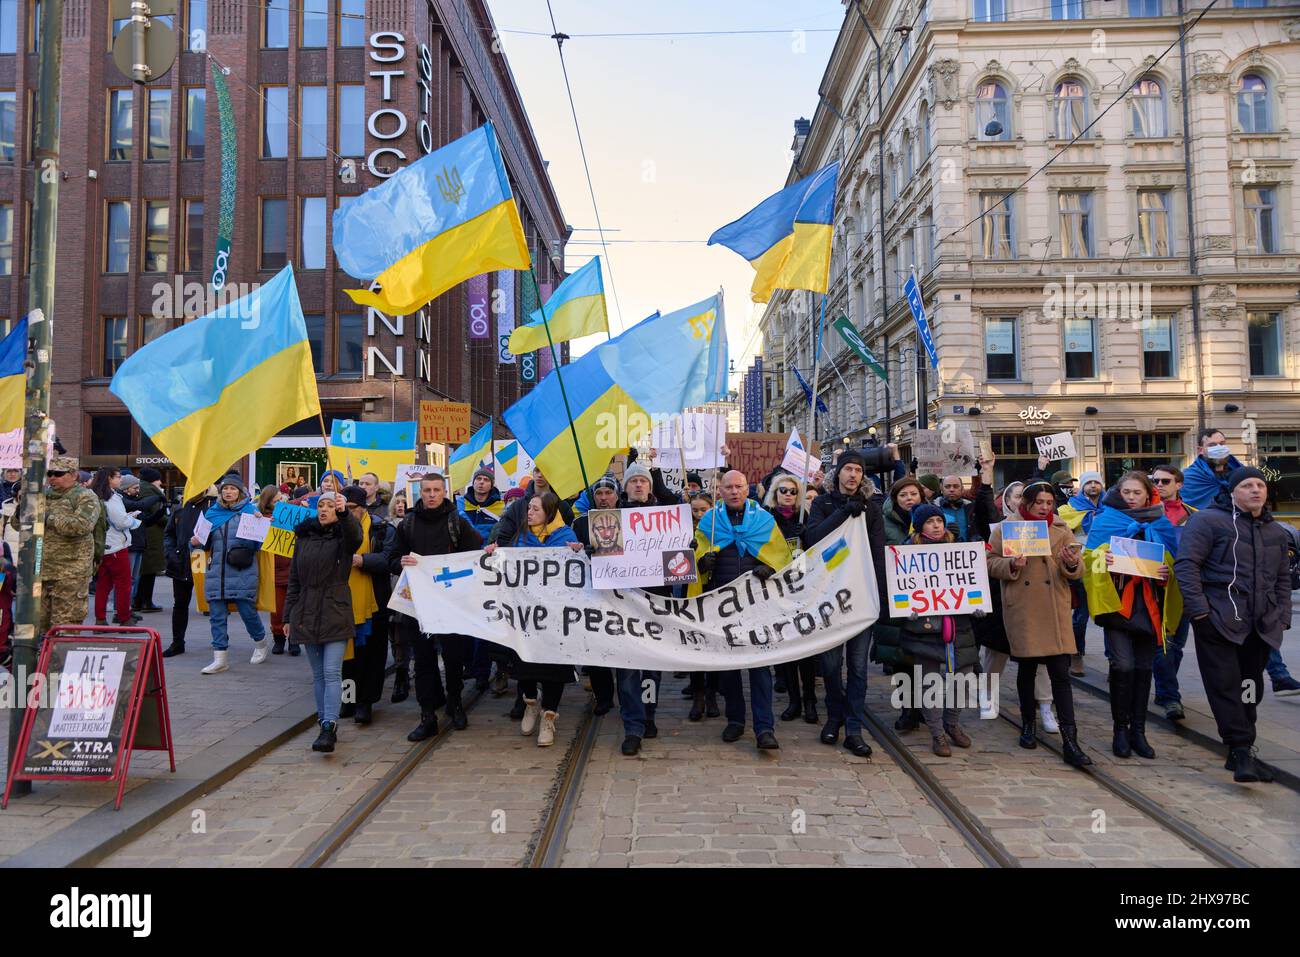 Helsinki, Finnland - 26. Februar 2022: Demonstranten bei einer Kundgebung gegen Russlands militärische Aggression und Besetzung der Ukraine Stockfoto